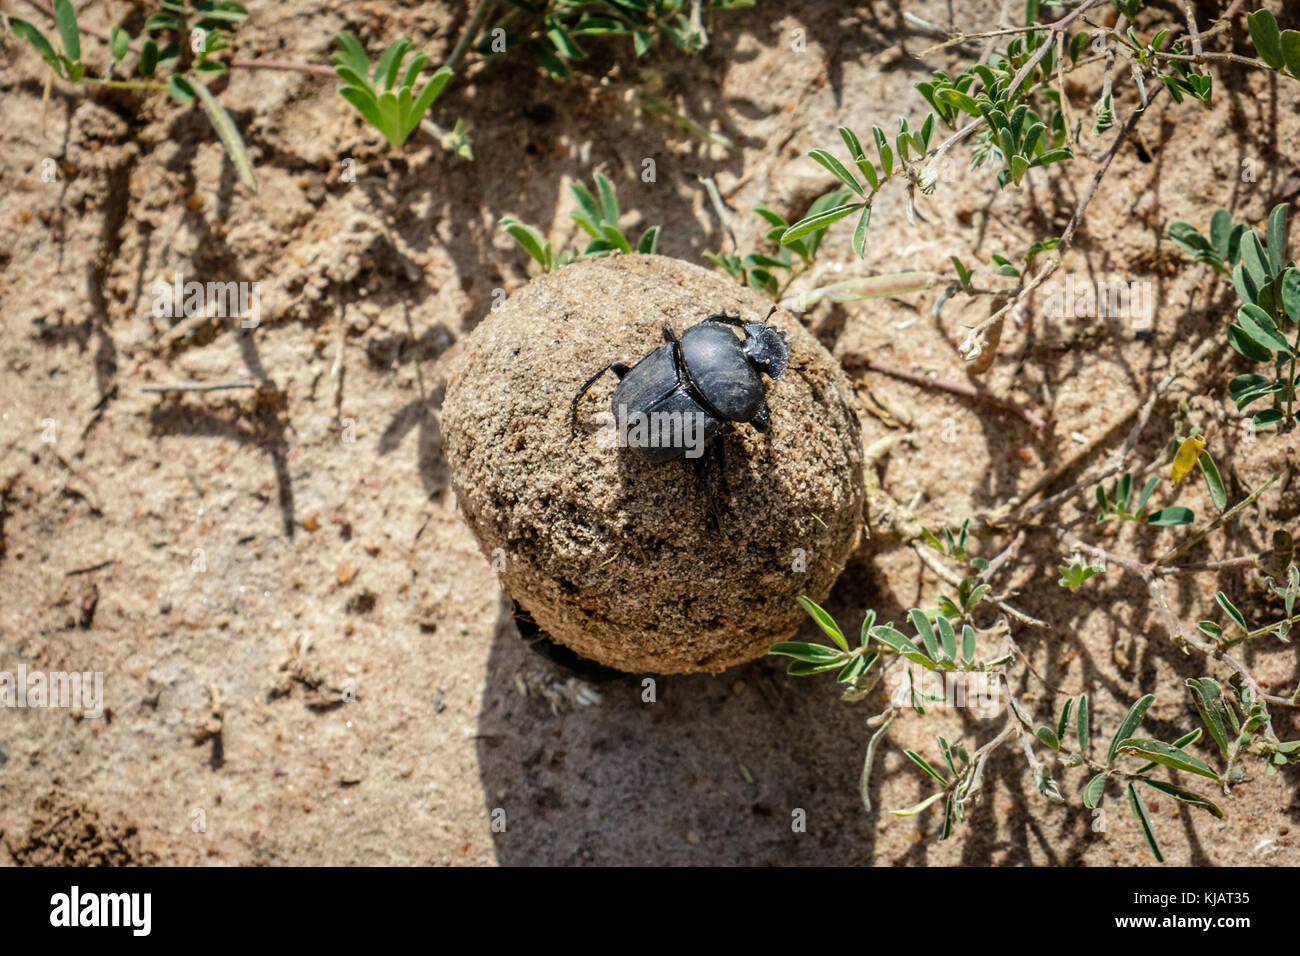 Boule de crotte roulée par un mâle bousier sur le sable du terrain dans le parc national de Murchison Falls, de l'Ouganda en Afrique. La femelle bousier est tr Banque D'Images